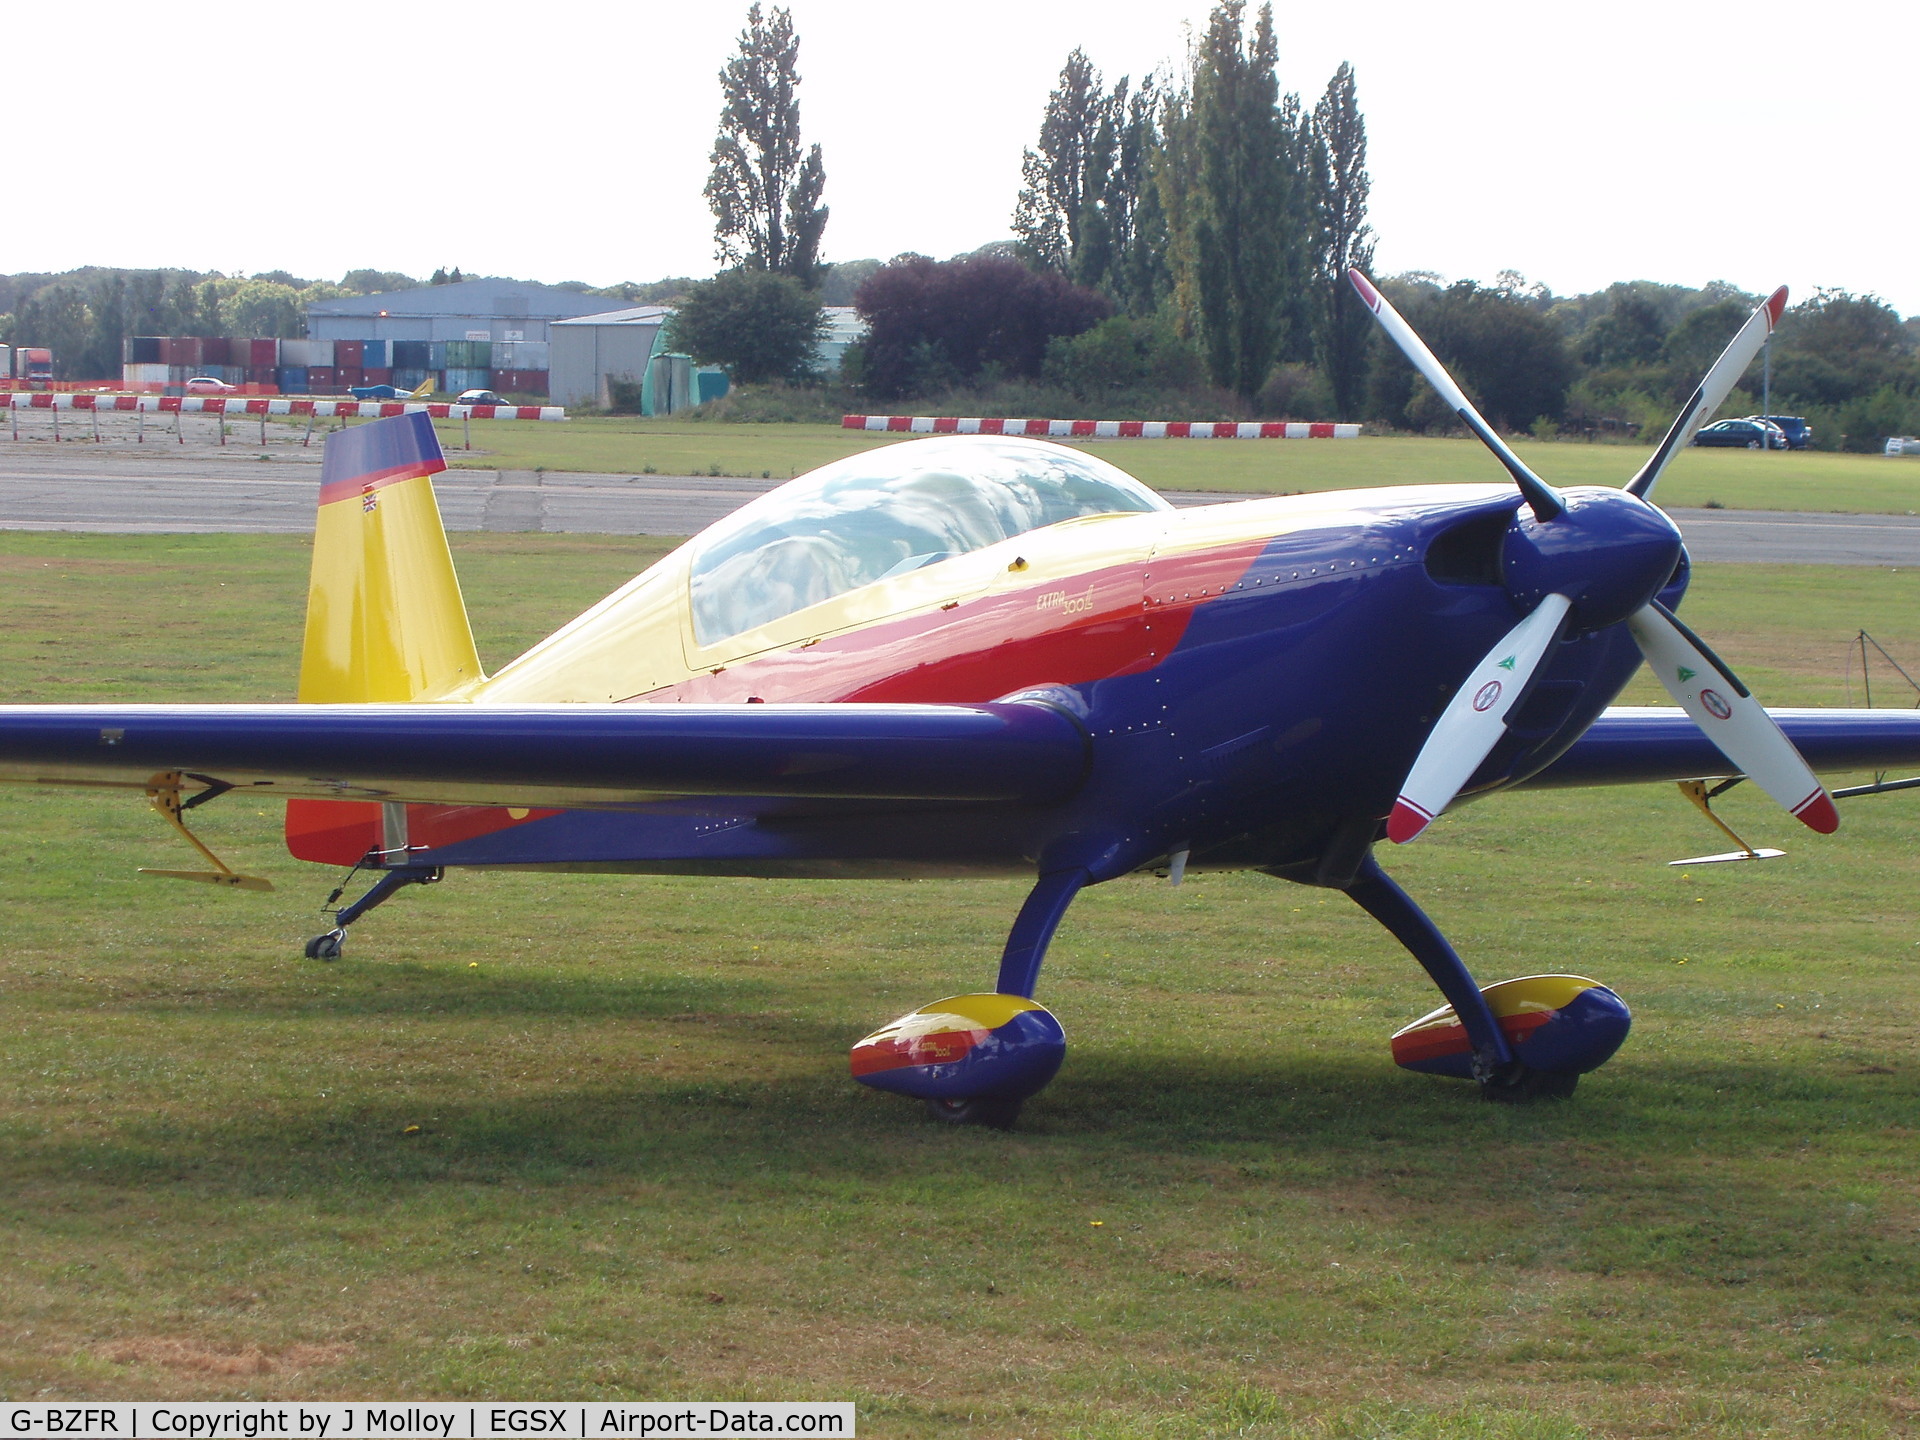 G-BZFR, 2000 Extra EA-300L C/N 203, extra 300L